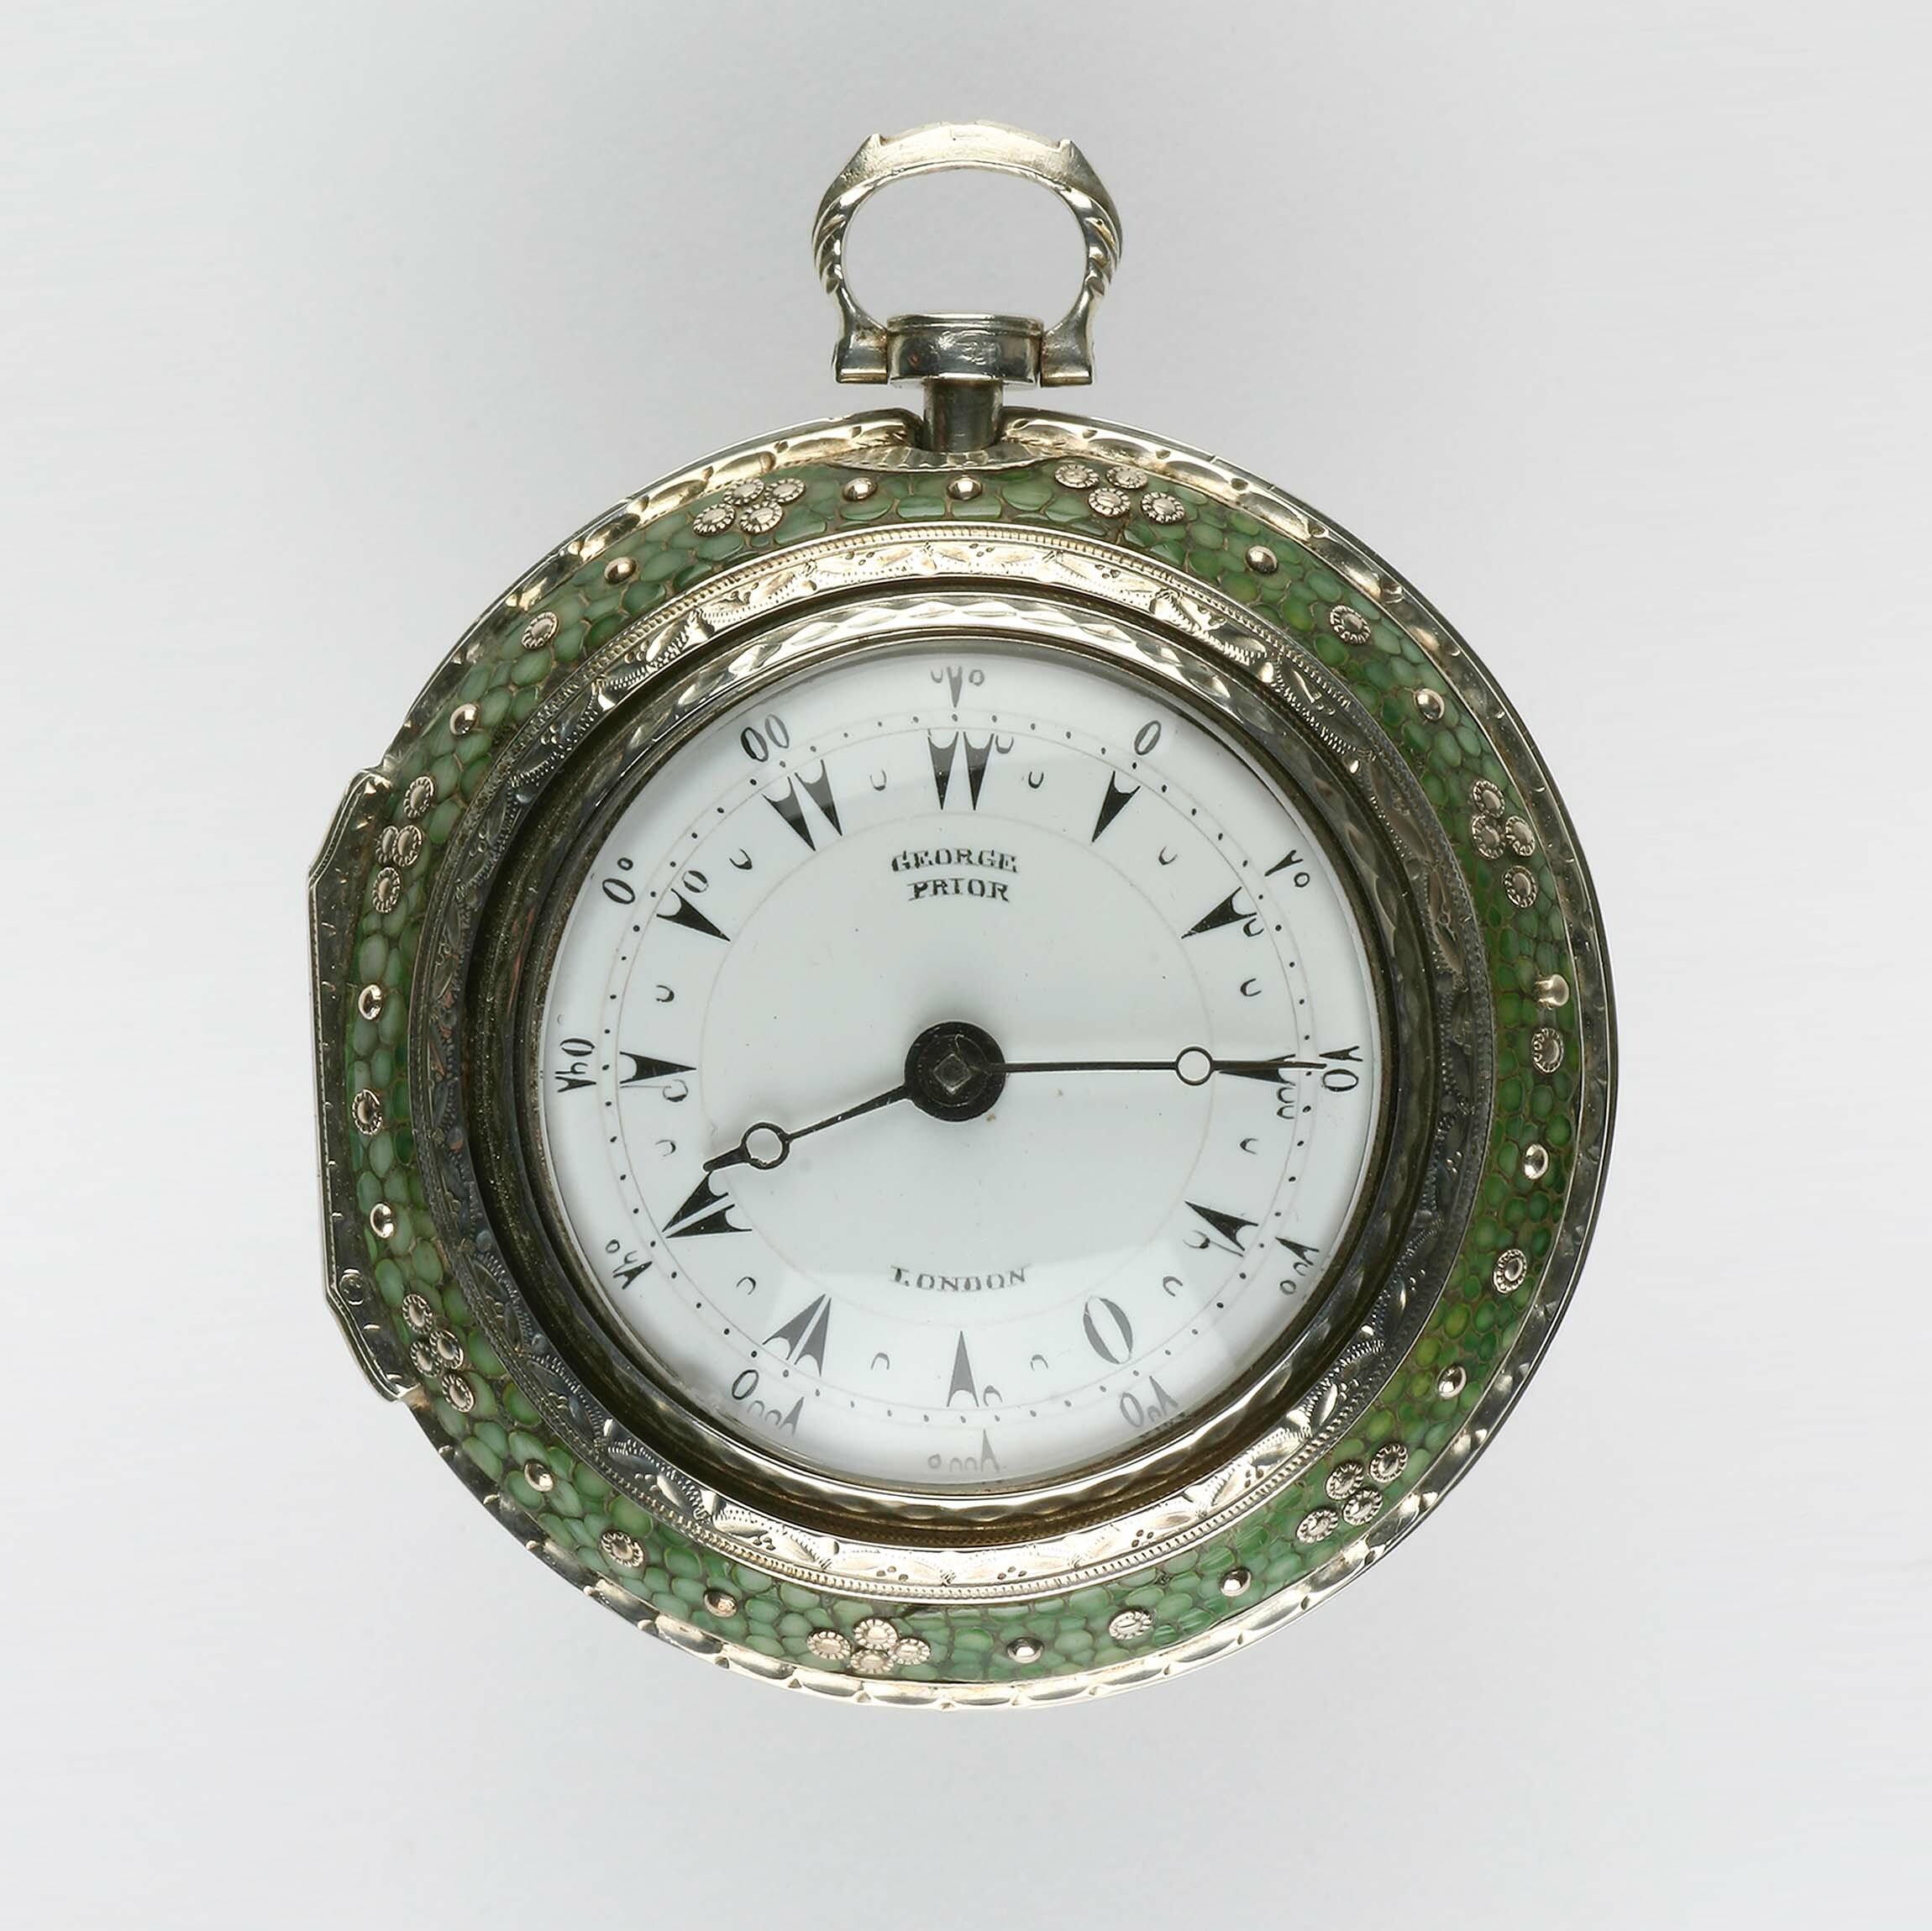 Taschenuhr, George Prior, London, um 1825 (Deutsches Uhrenmuseum CC BY-SA)